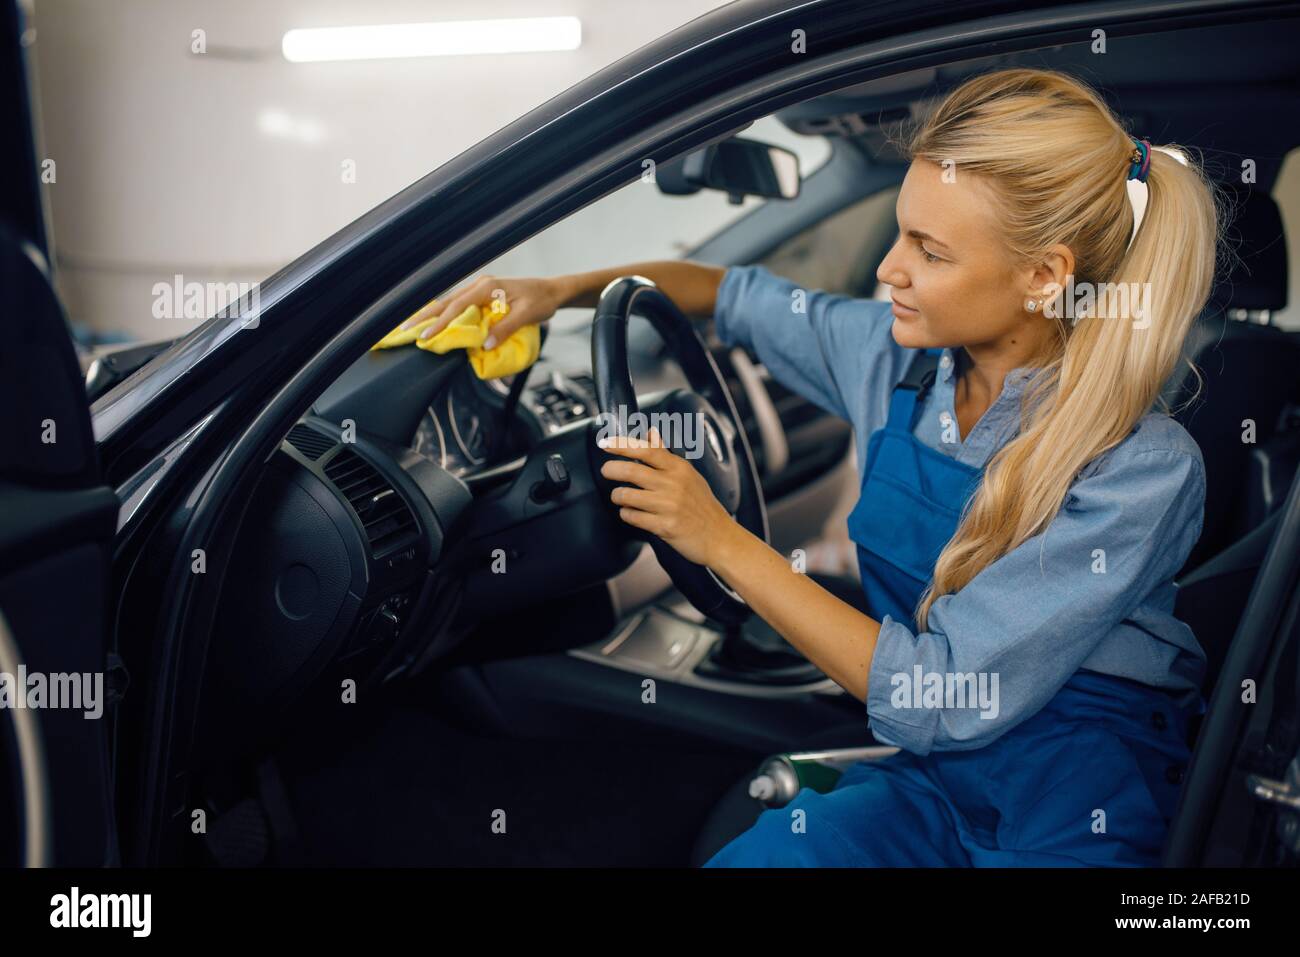 Weibliche Person mit Schwamm reinigt Fahrzeug Scheinwerfer, Auto